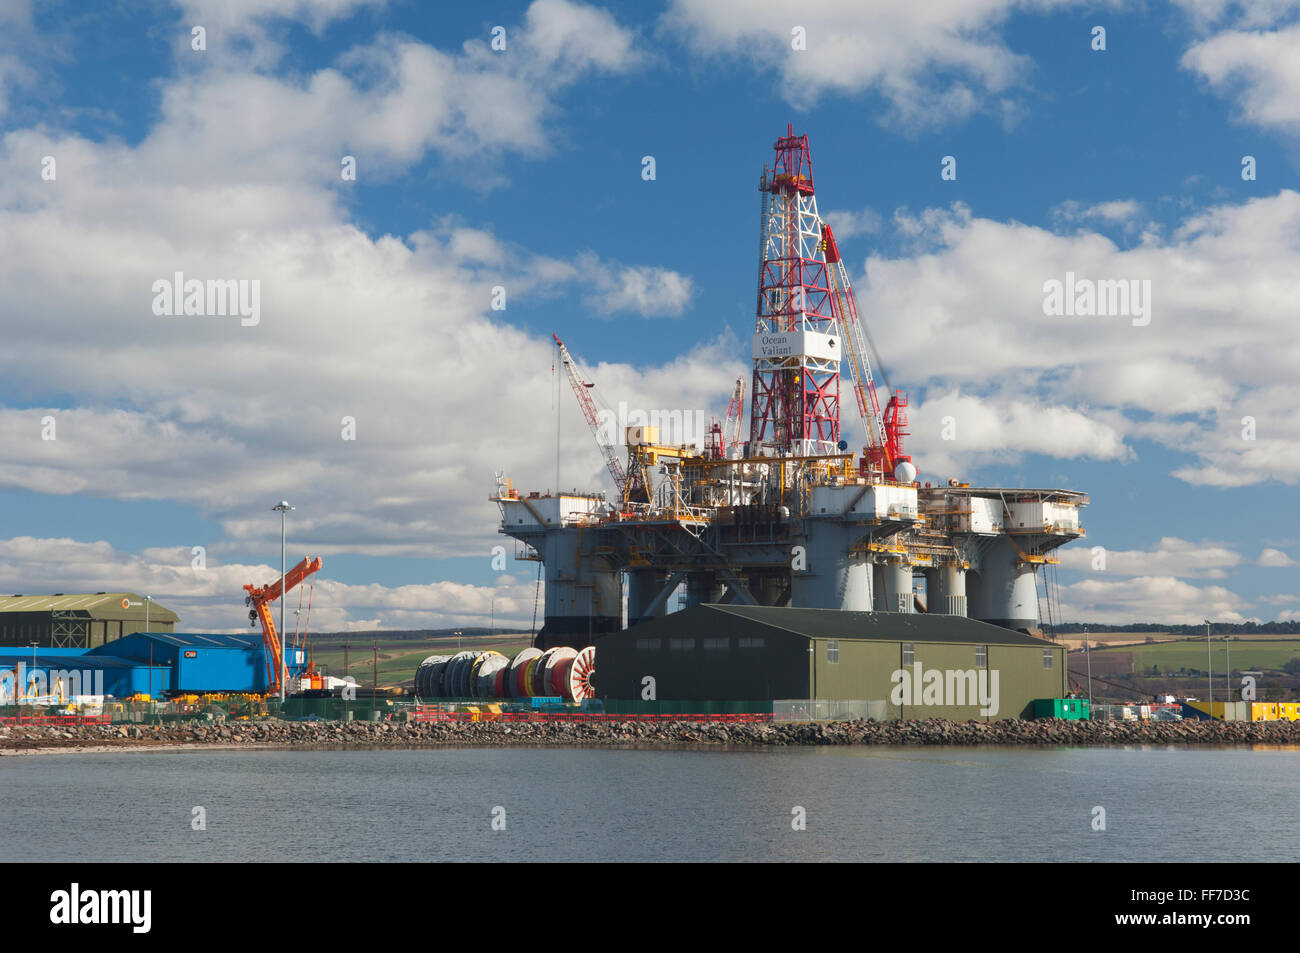 La plate-forme pétrolière au large de la ville d'Invergordon, dans l'Estuaire de Cromarty - Ross-shire, en Écosse. Banque D'Images